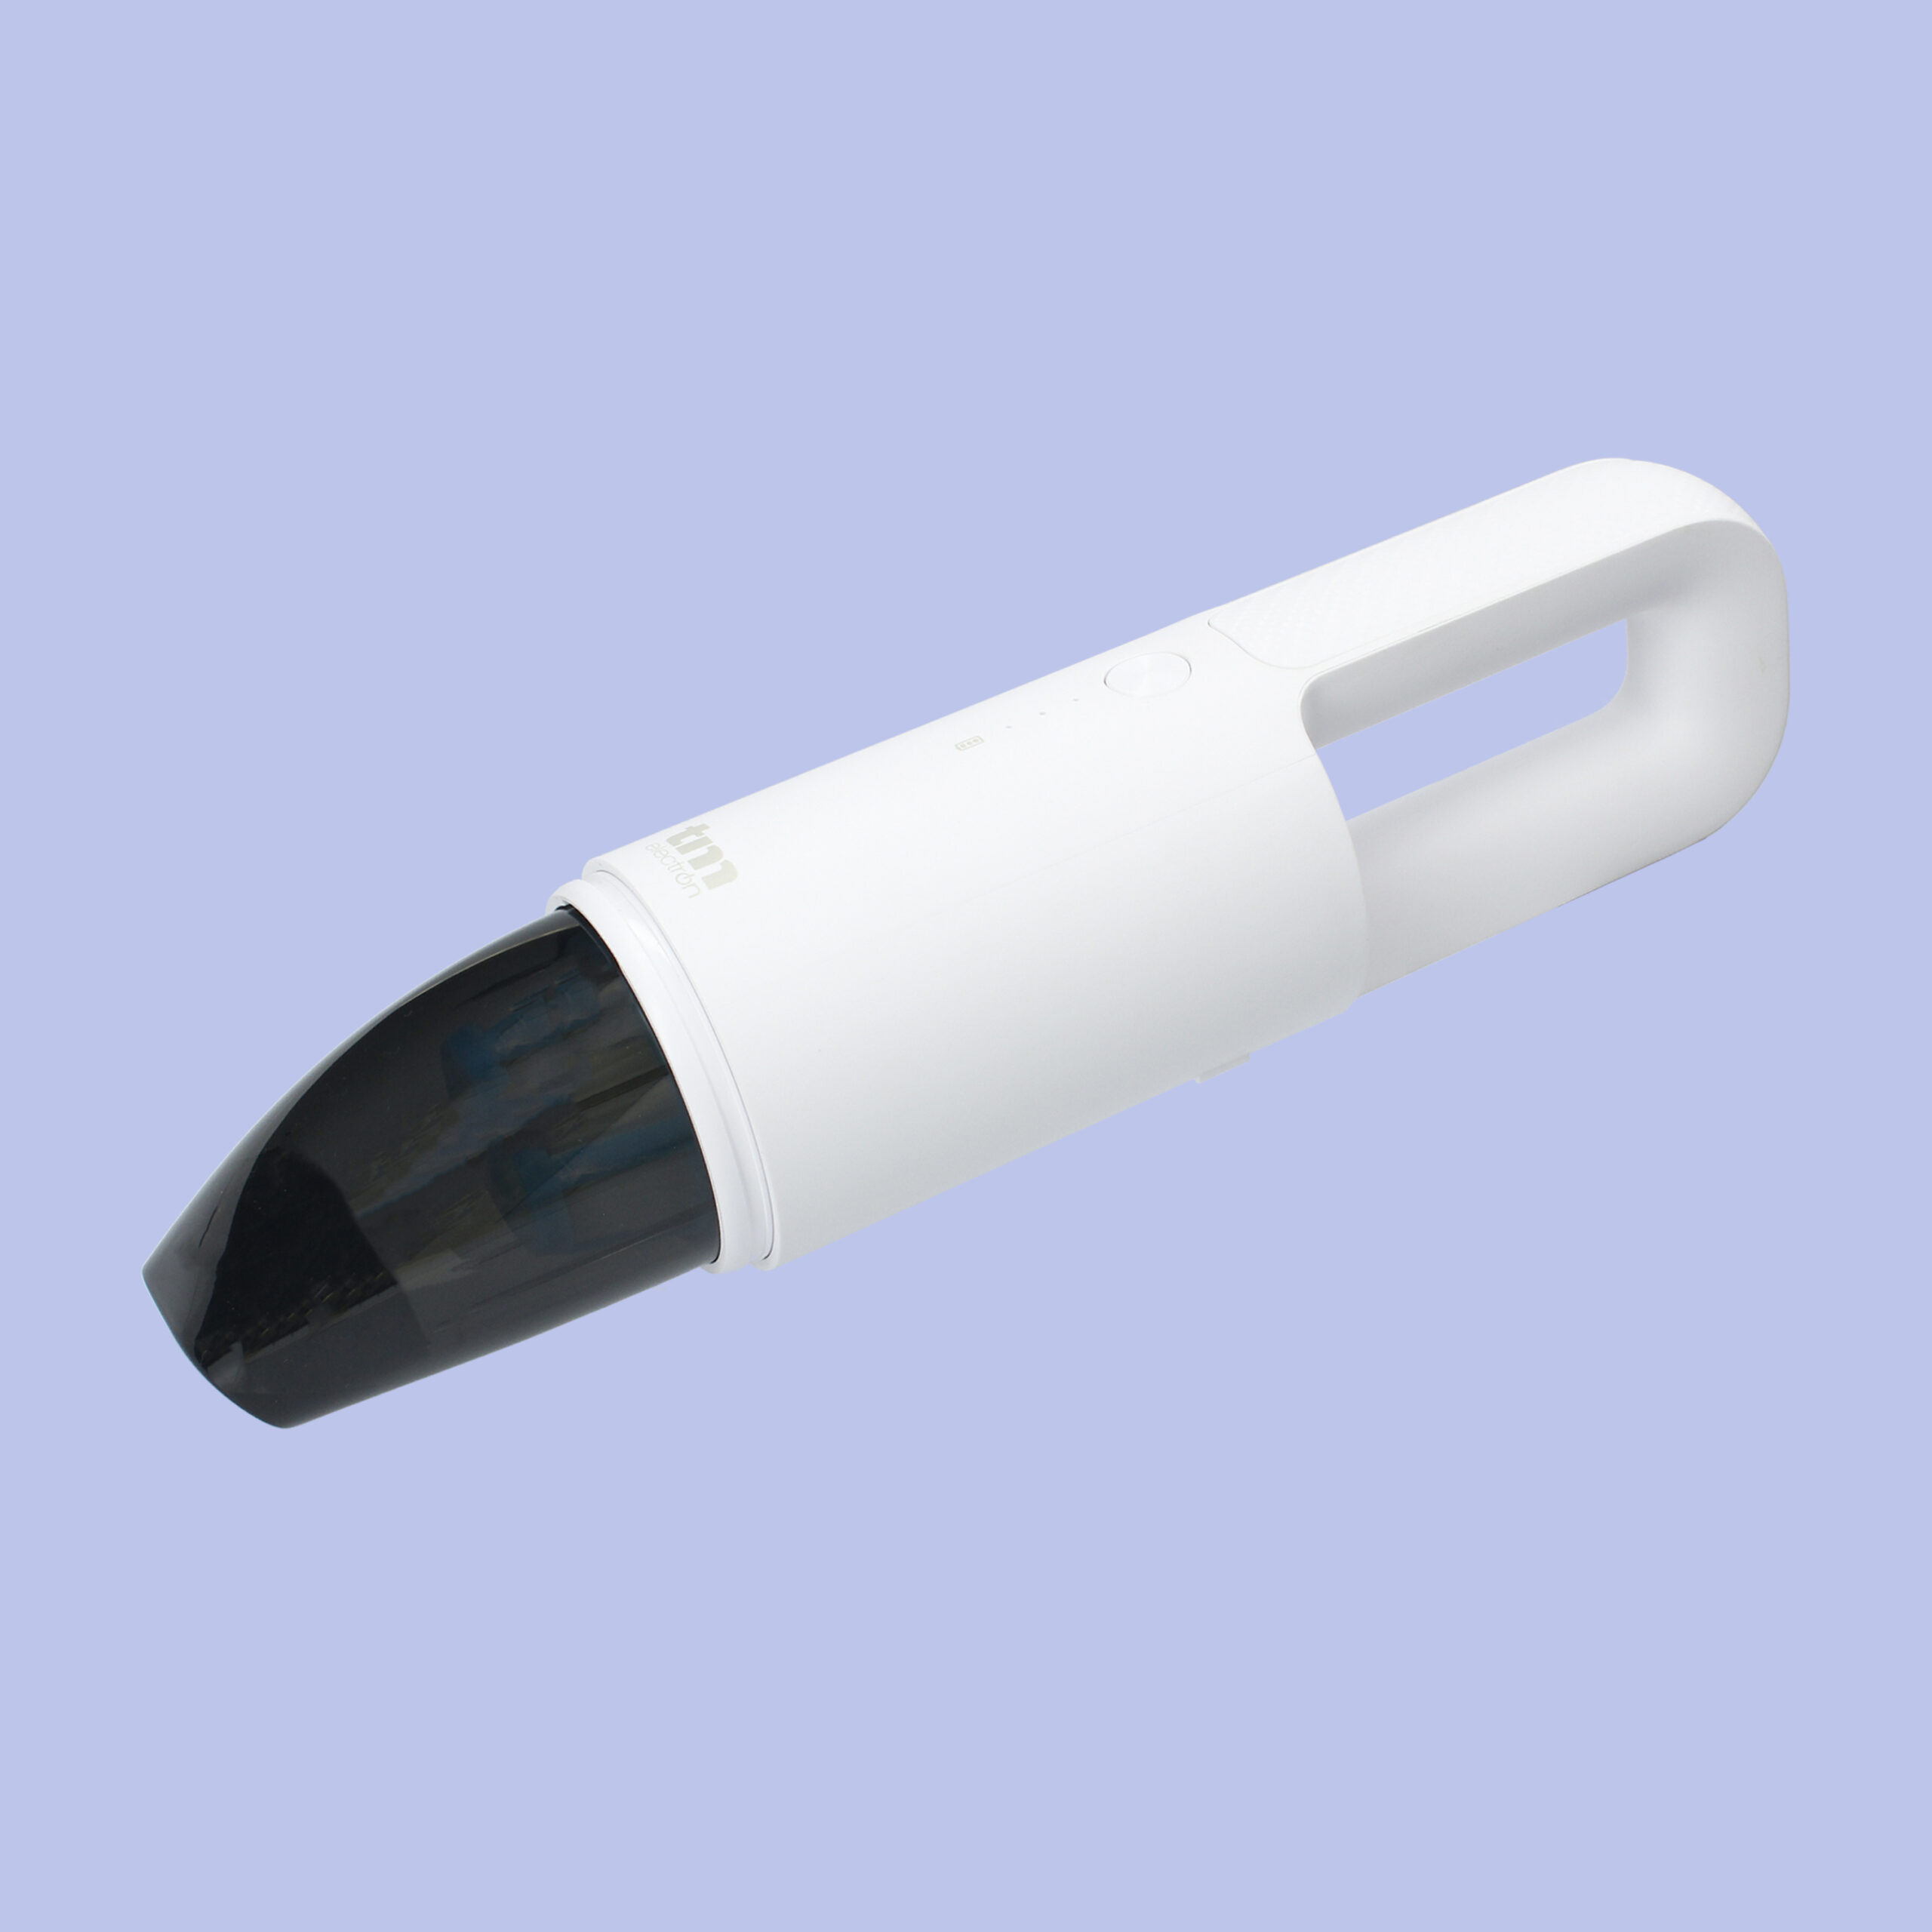 Mini aspirador inalámbrico portátil (blanco) - TM Electron